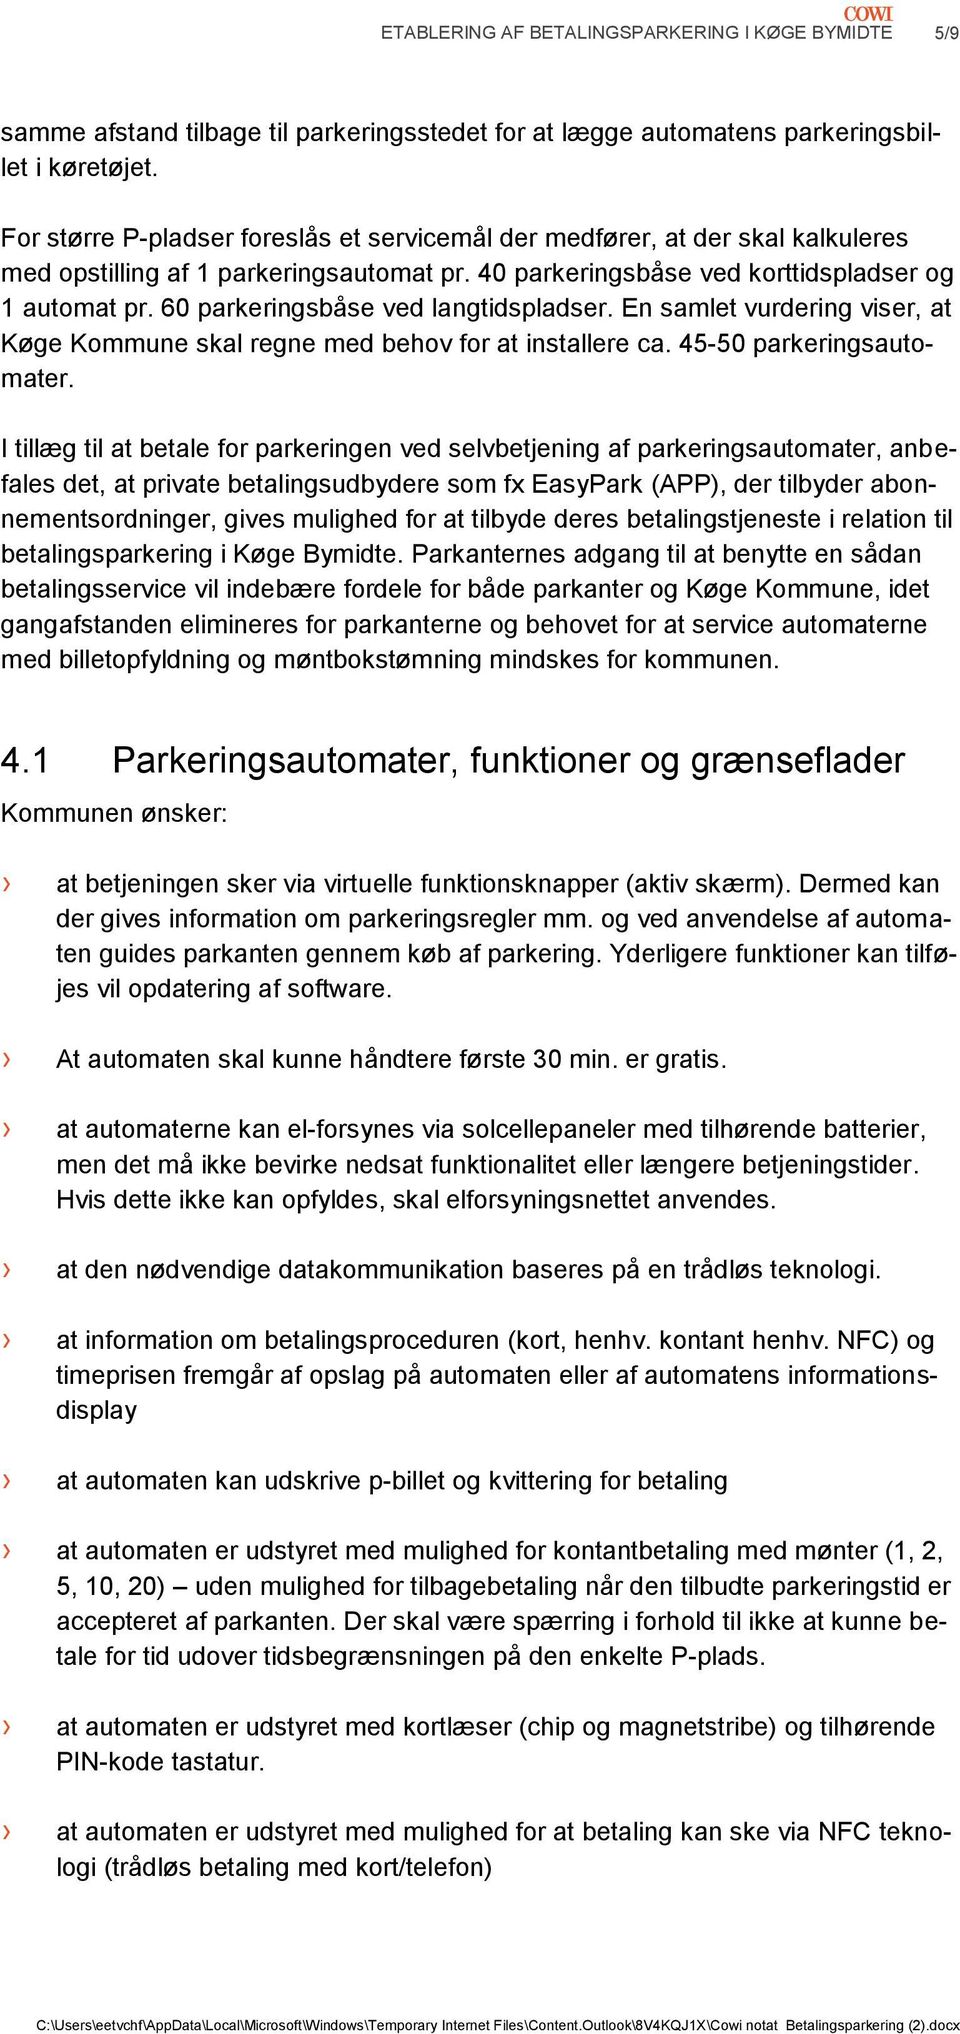 60 parkeringsbåse ved langtidspladser. En samlet vurdering viser, at Køge Kommune skal regne med behov for at installere ca. 45-50 parkeringsautomater.